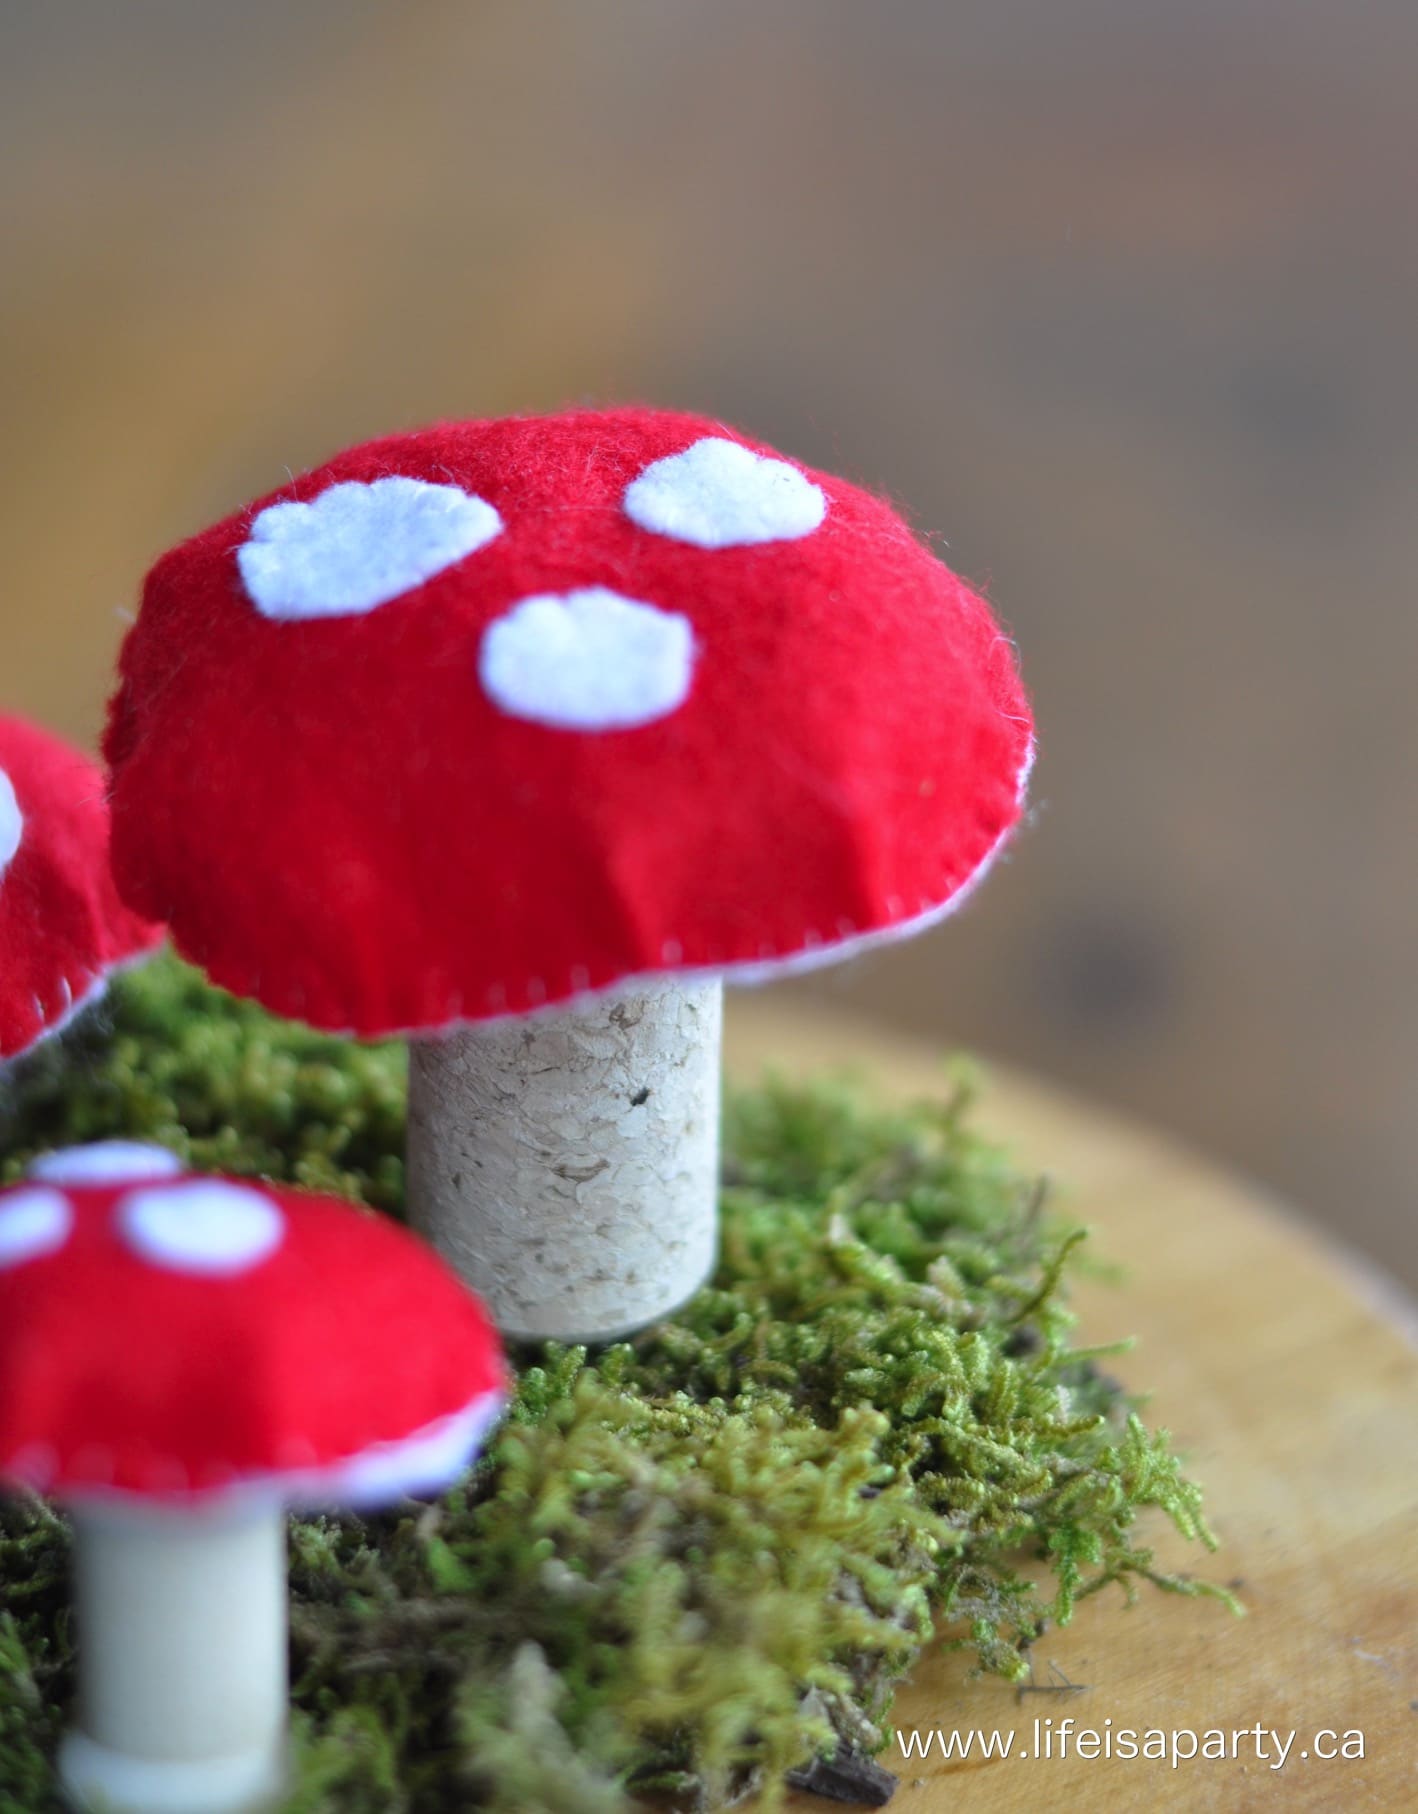 red and white polka dot felt mushrooms